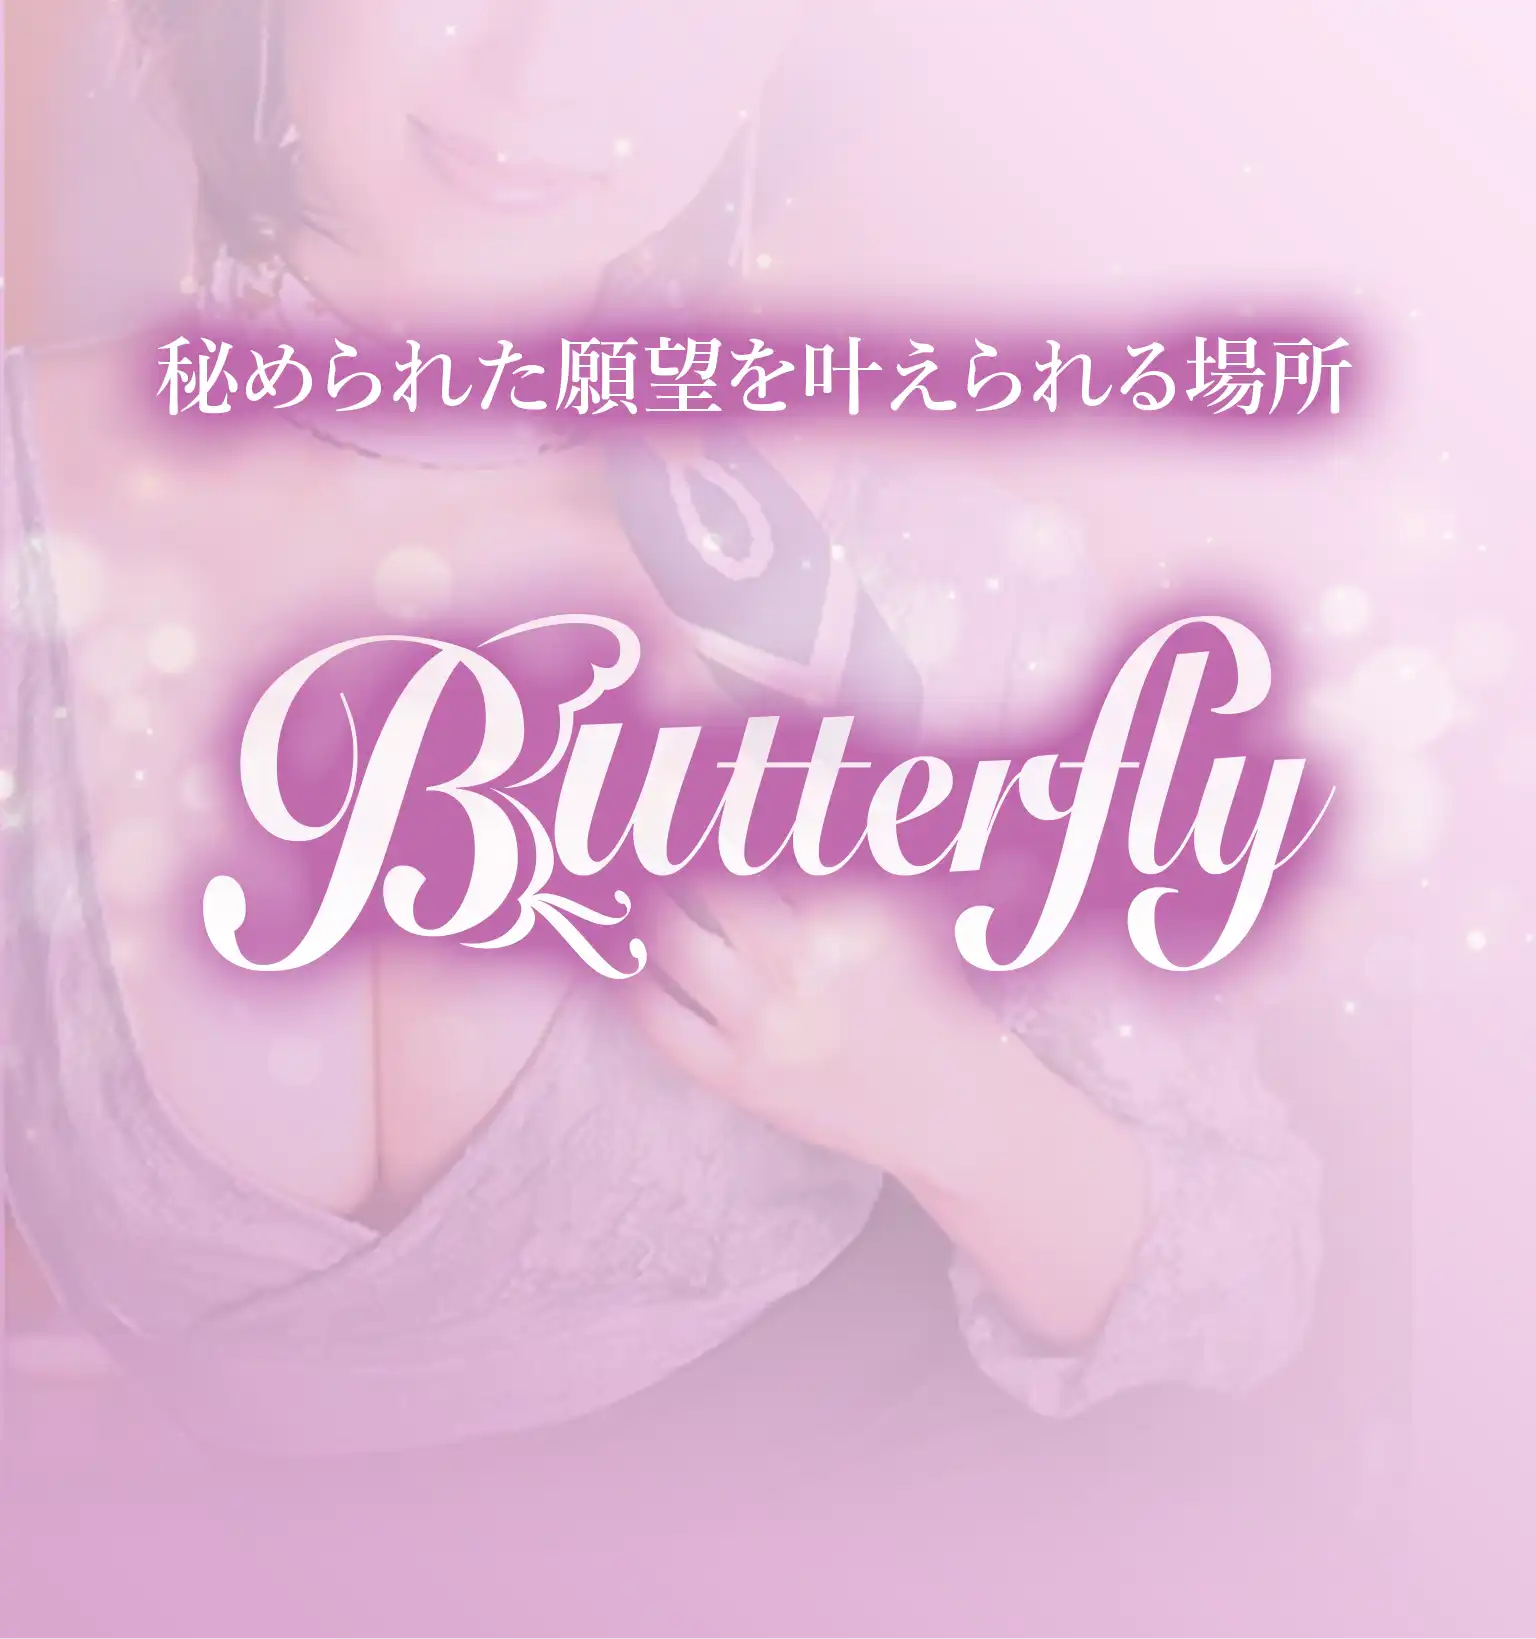 秘められた願望を叶えられる場所 Butterfly